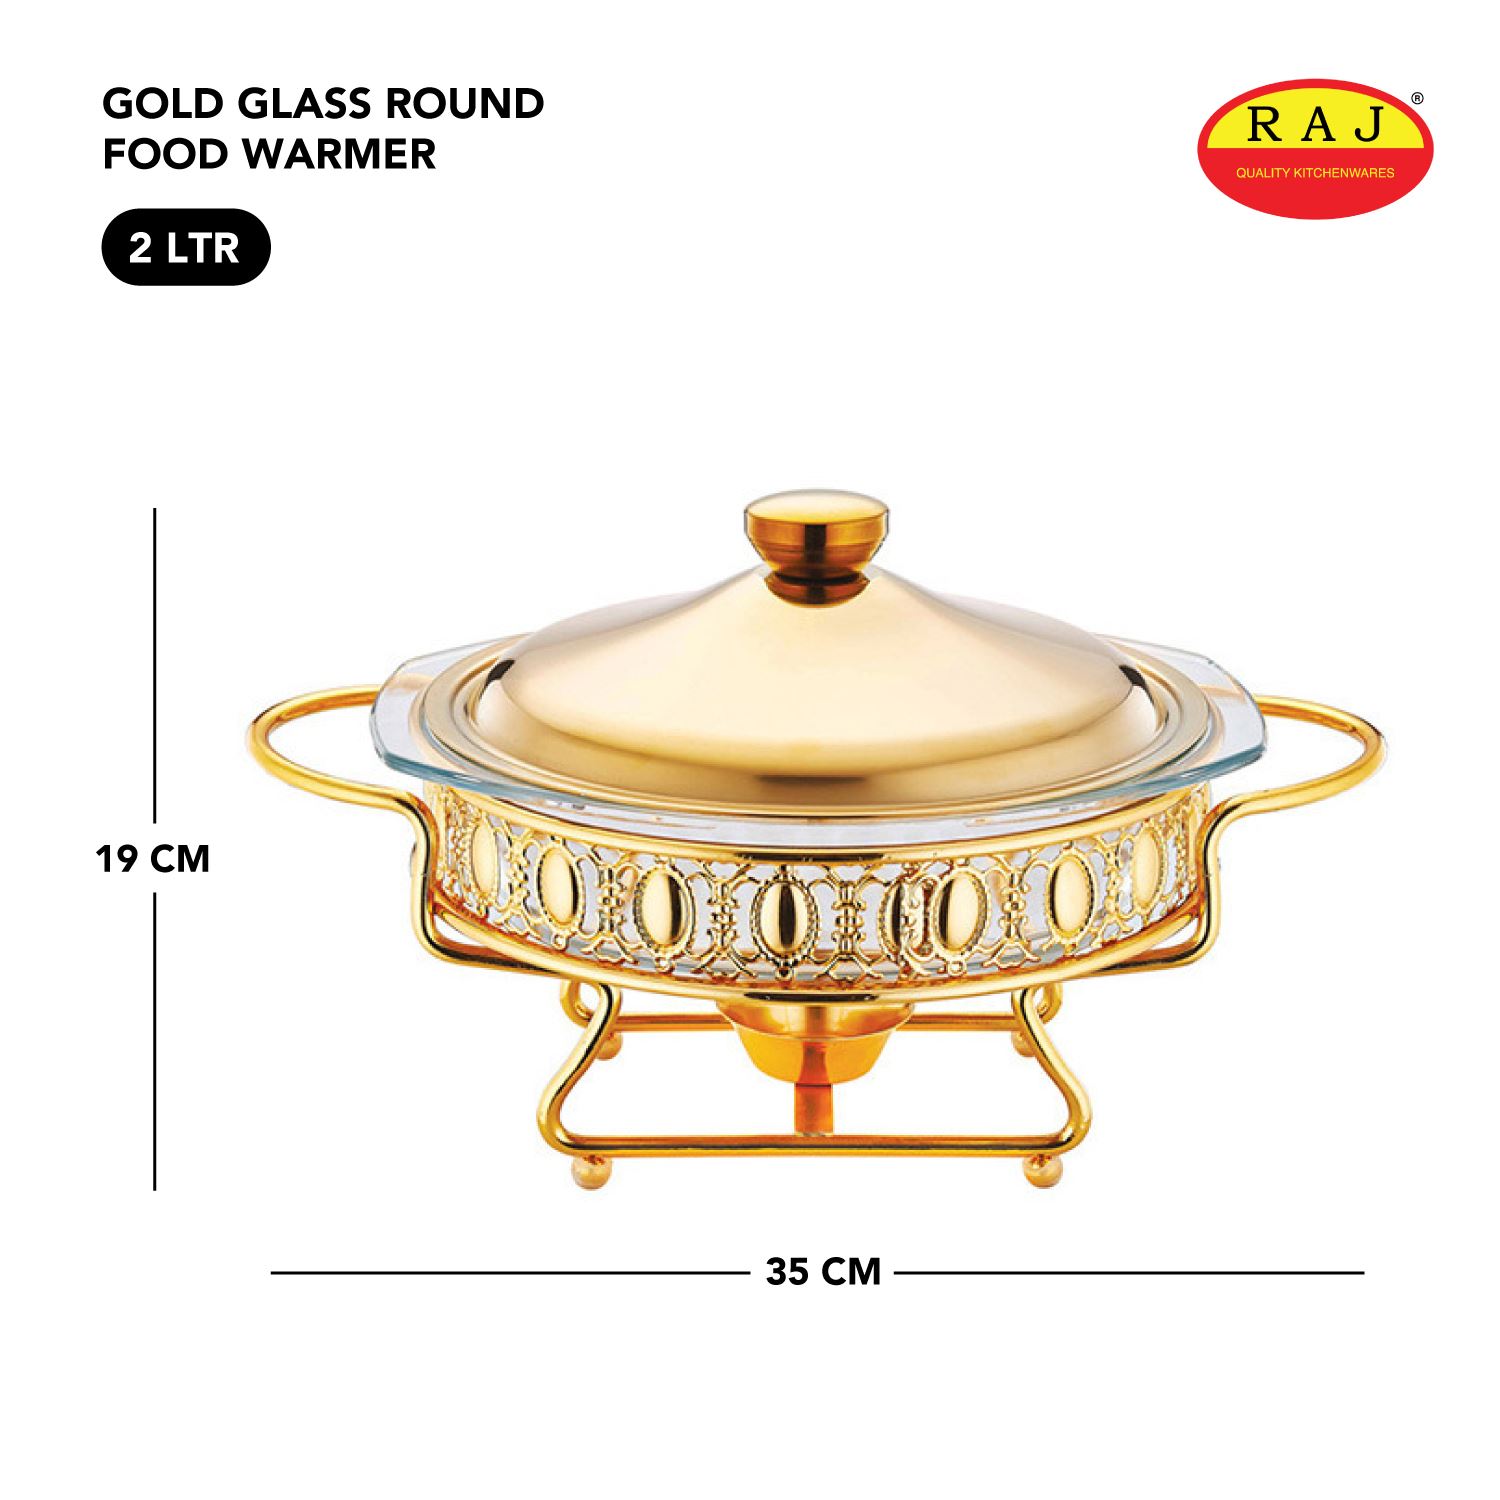 Raj Gold Glass Round Food Warmer 2.0 LTR